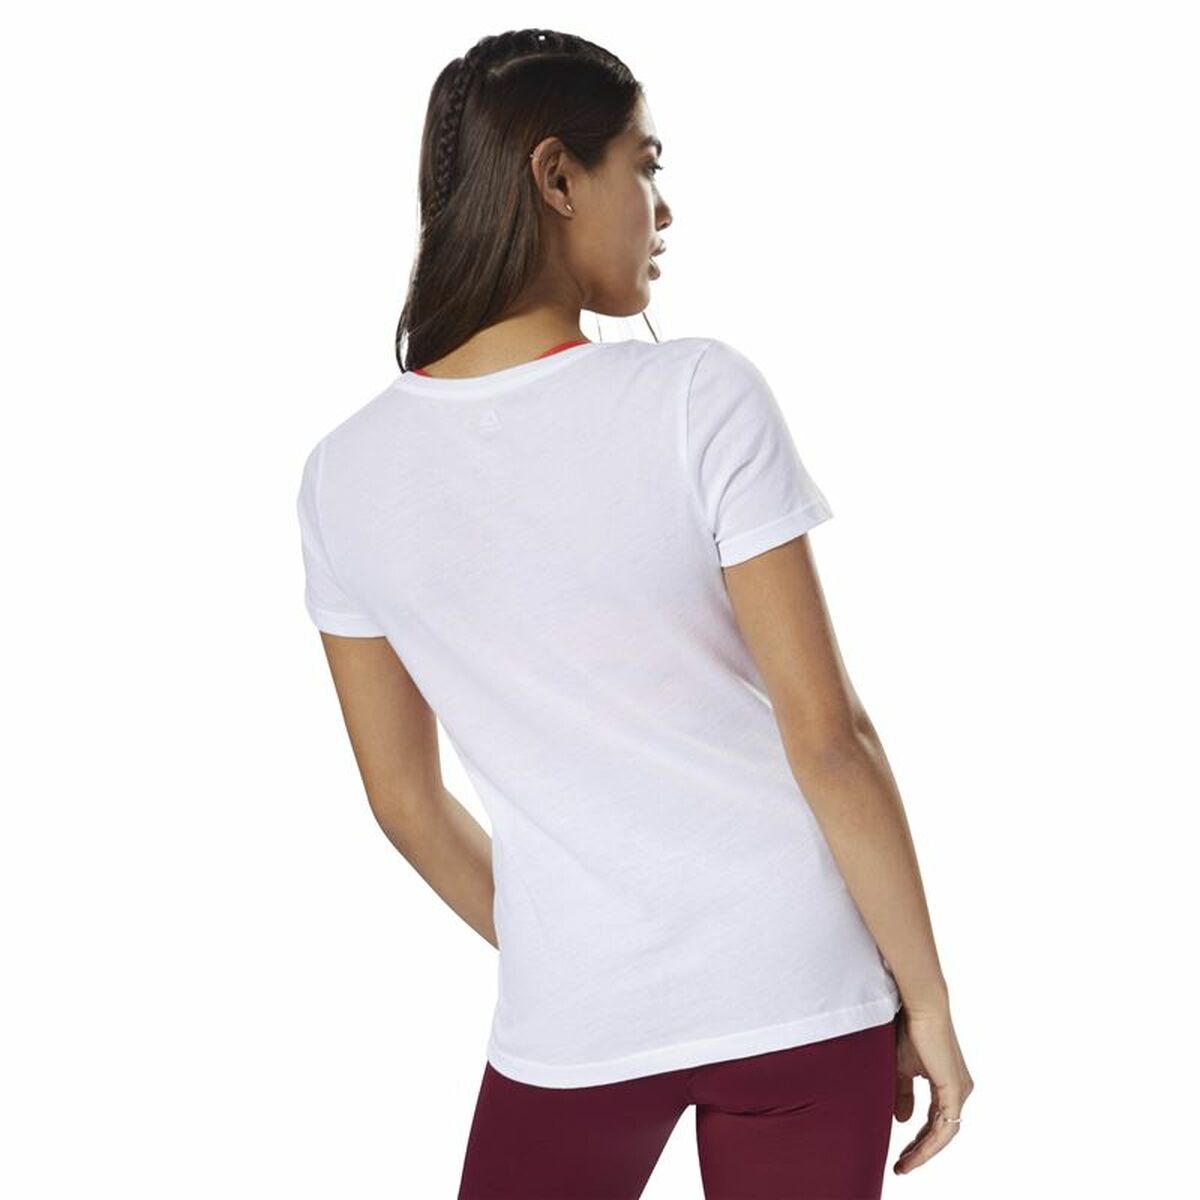 Damen Kurzarm-T-Shirt Reebok Scoop Neck Weiß